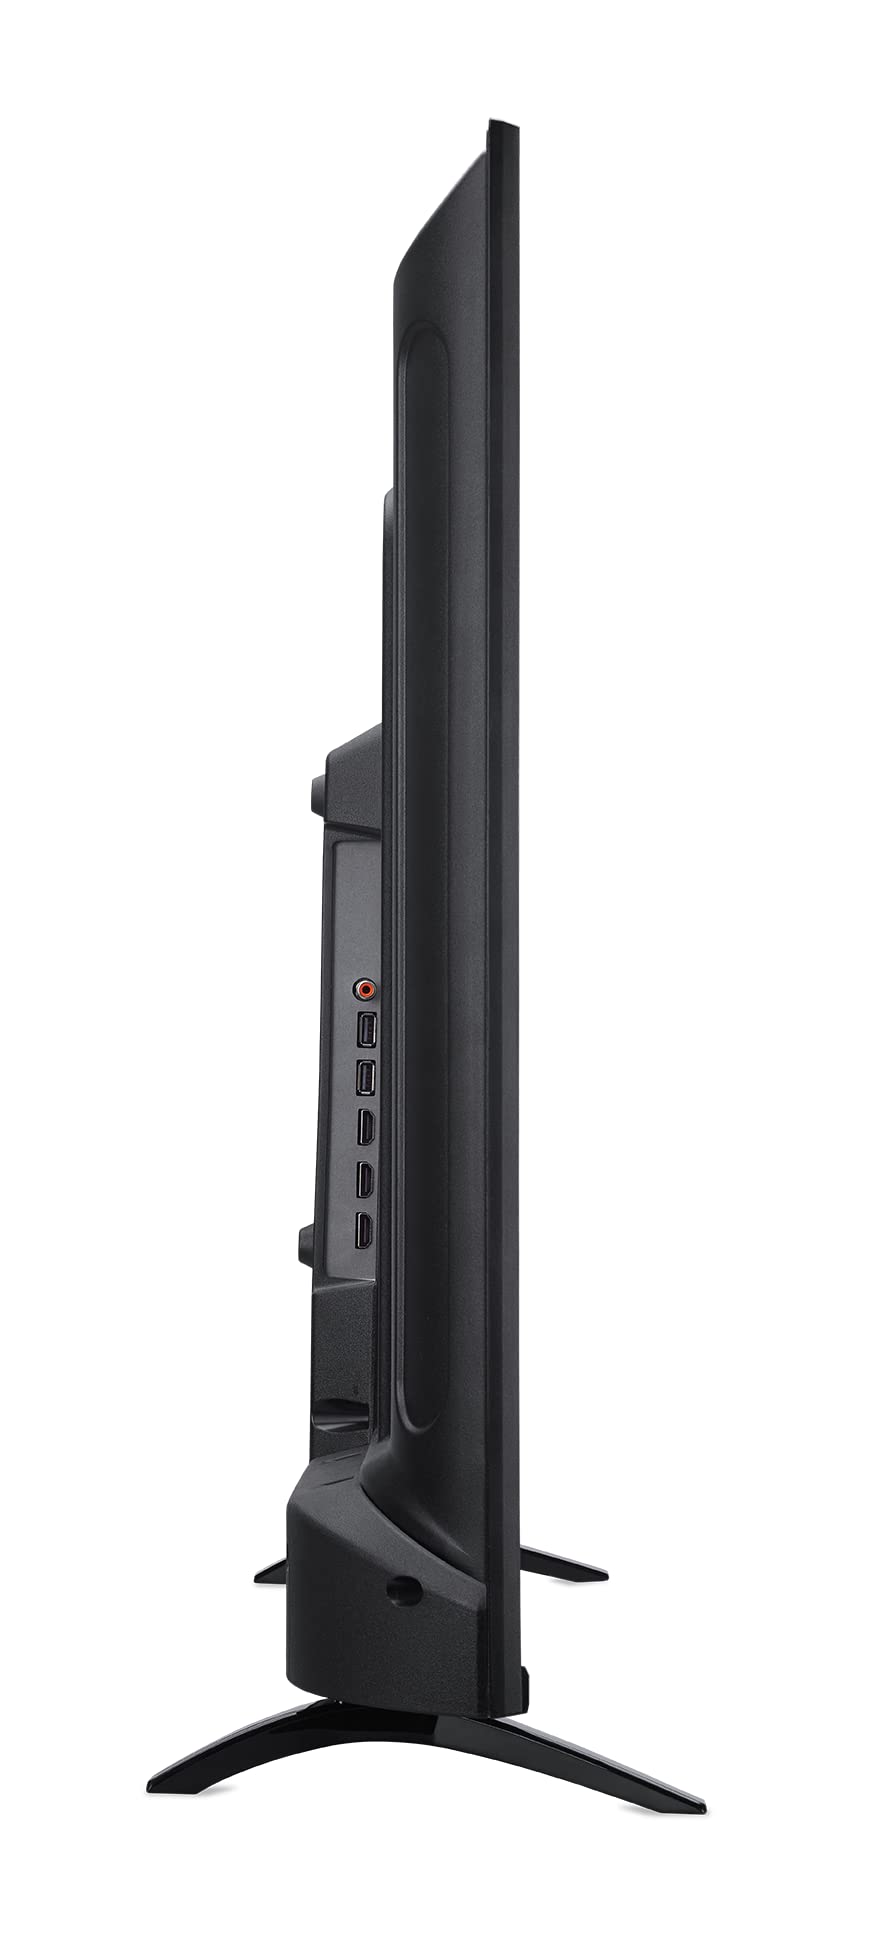 Acer DA430 bemiiix 43” Full HD (1920 x 1080) VA Smart Monitor | Streaming TV (Tuner-Free), Netflix, YouTube & More | Wi-Fi 5 | BT 5.0 | 3 x HDMI 1.4, 1 x S/PDIF, 1 x CVBS, 2 x USB 2.0 & 1 x RJ-45